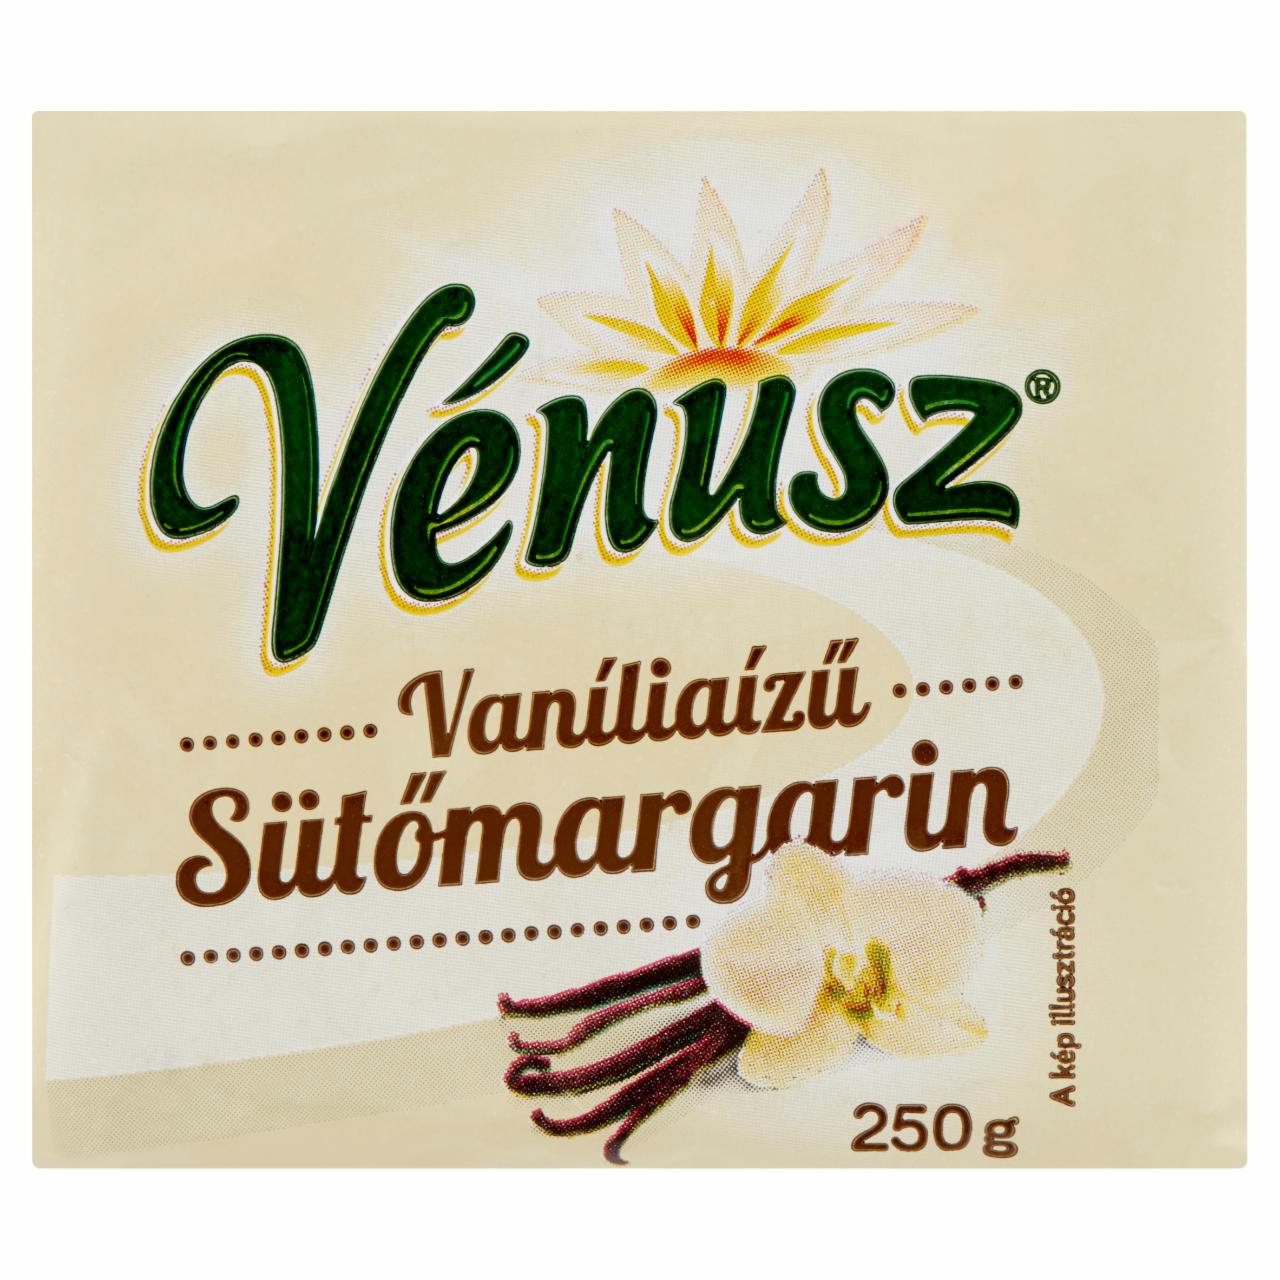 Képek - Vénusz vaníliaízű sütőmargarin 250 g